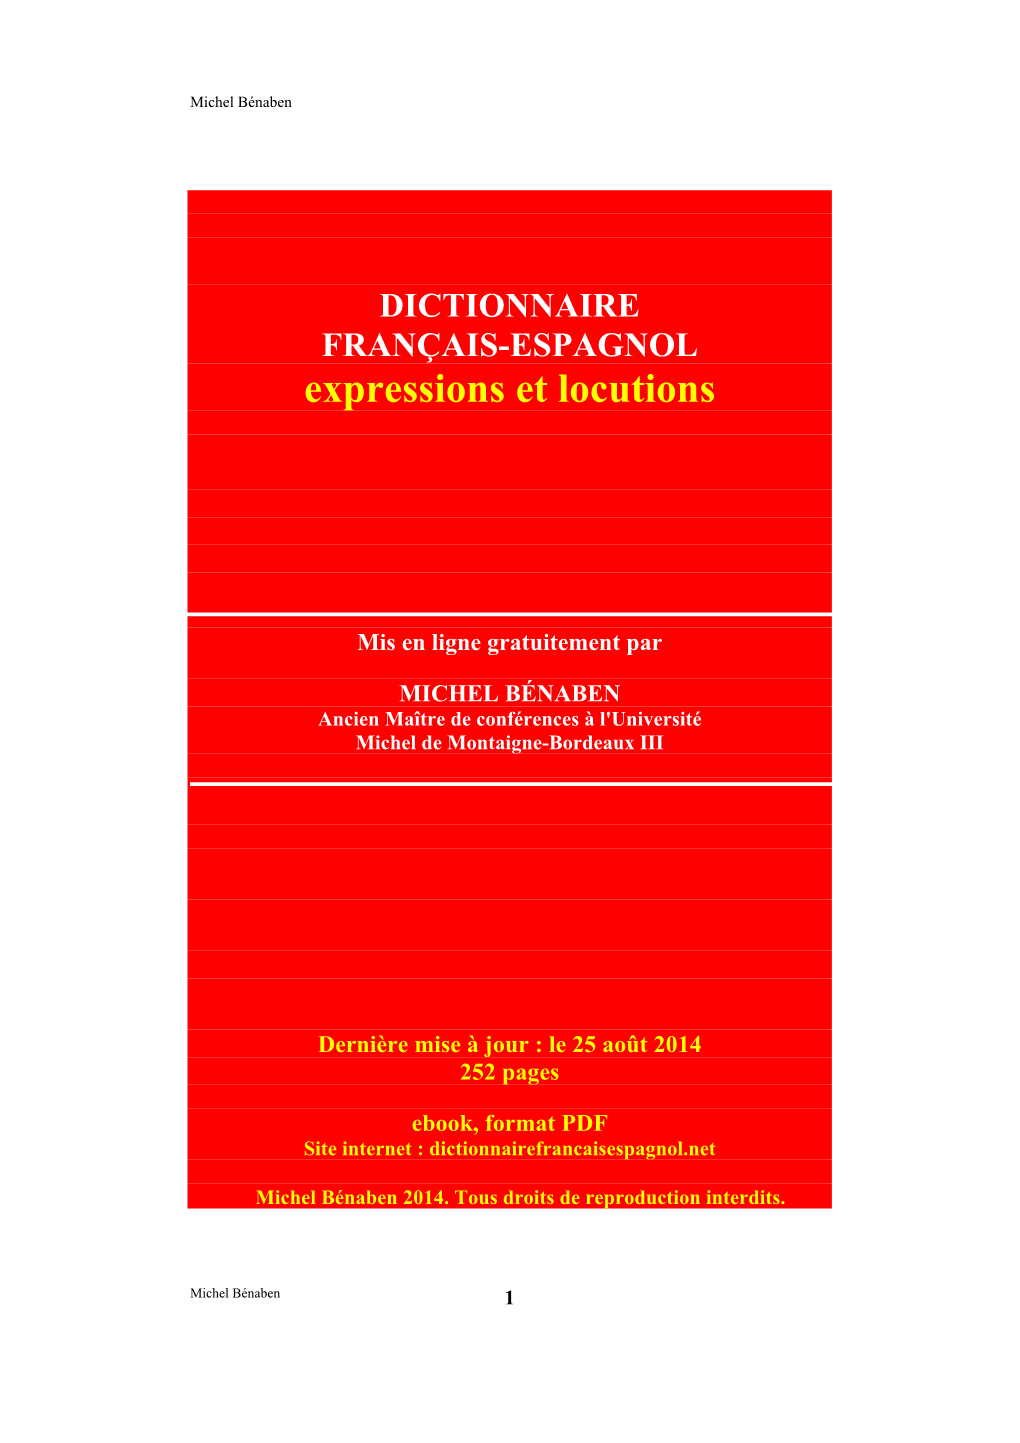 DICTIONNAIRE FRANÇAIS-ESPAGNOL Expressions Et Locutions